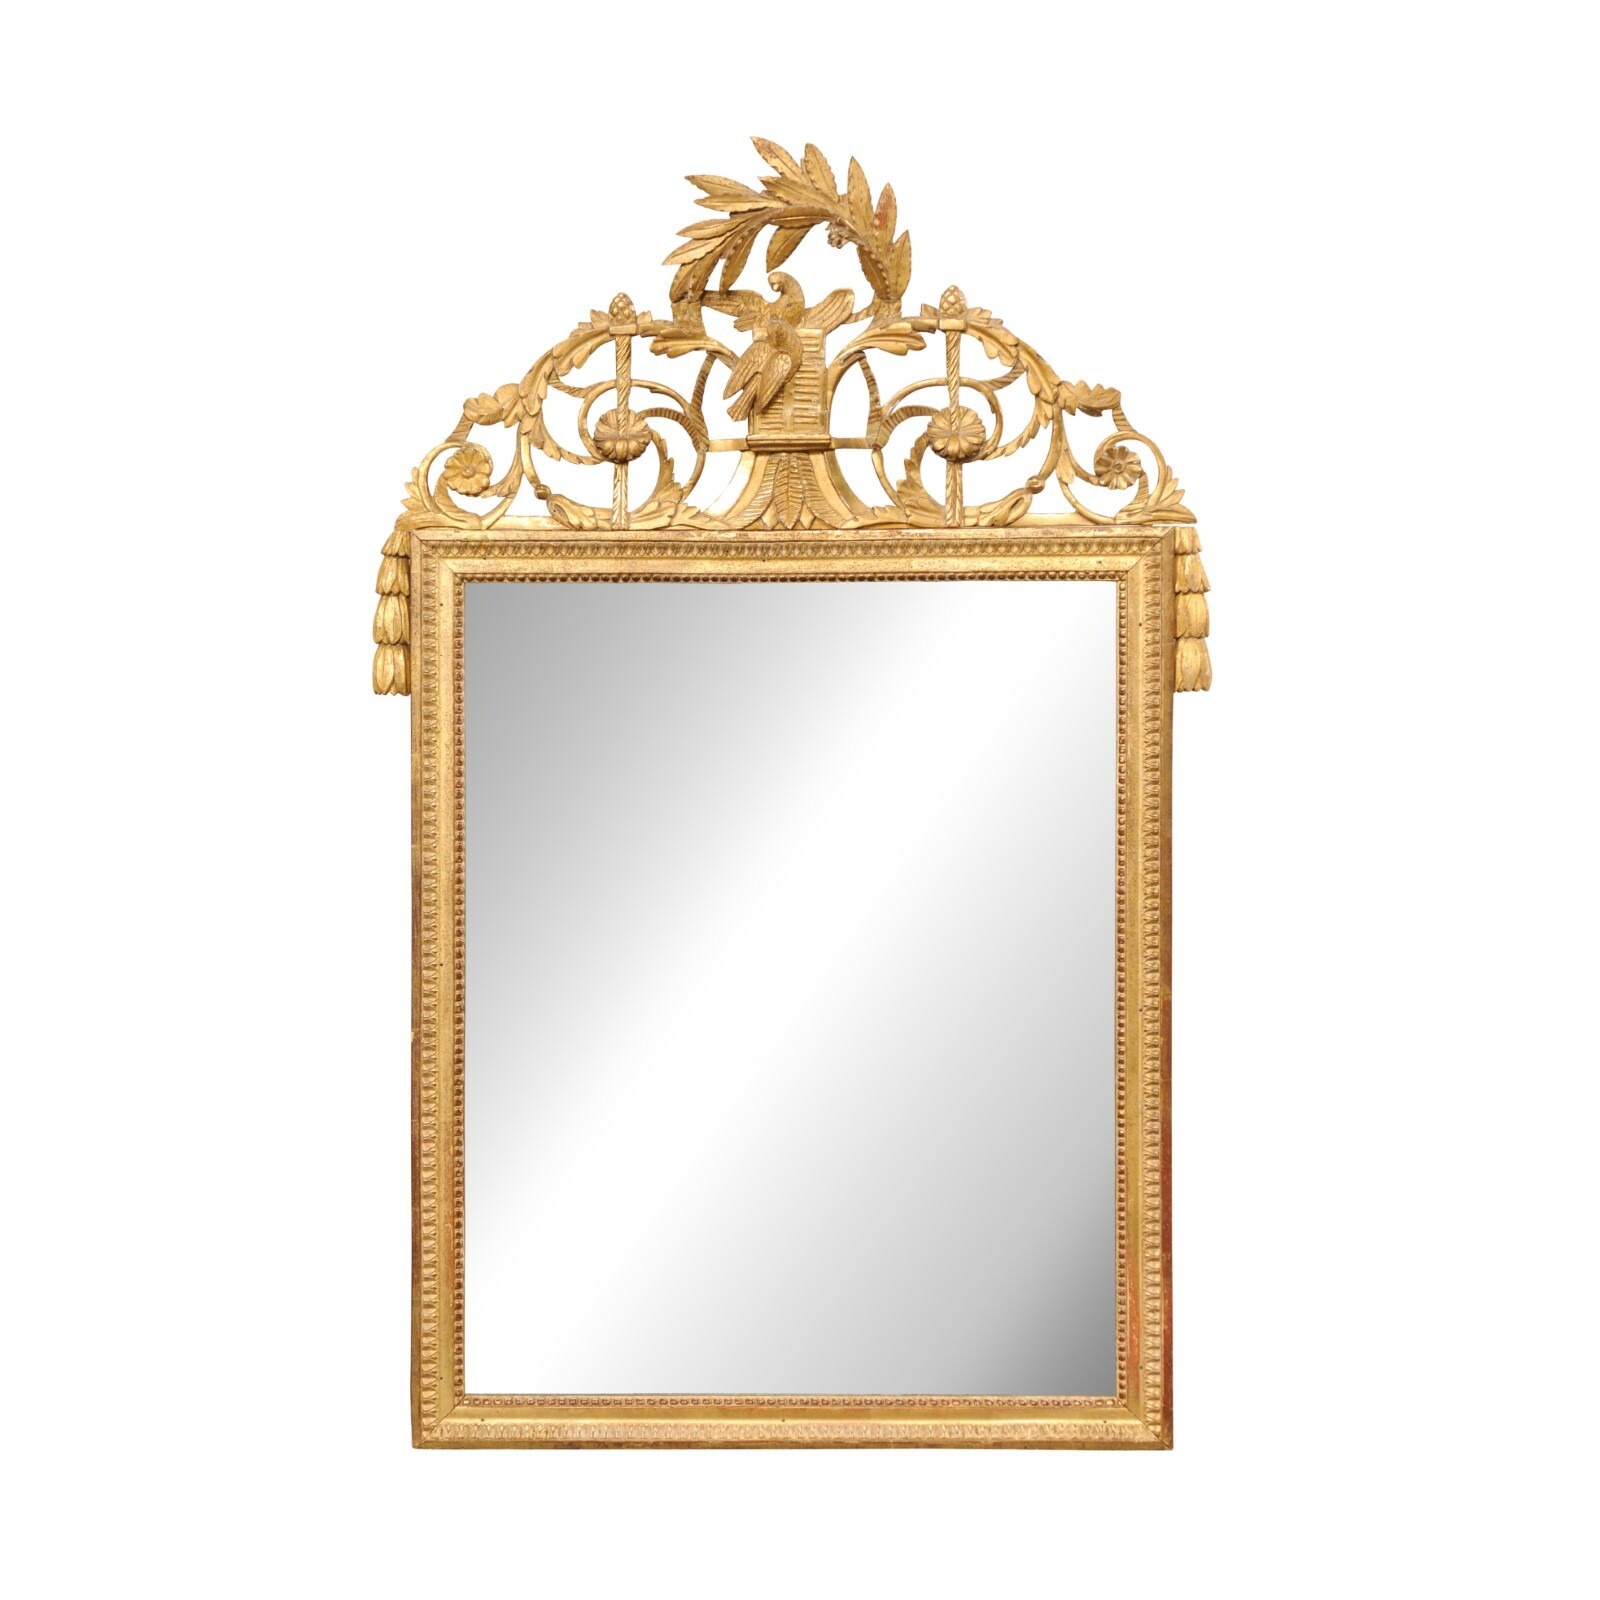 French Gilt Mirror w/Ornate Crest, 19th C.